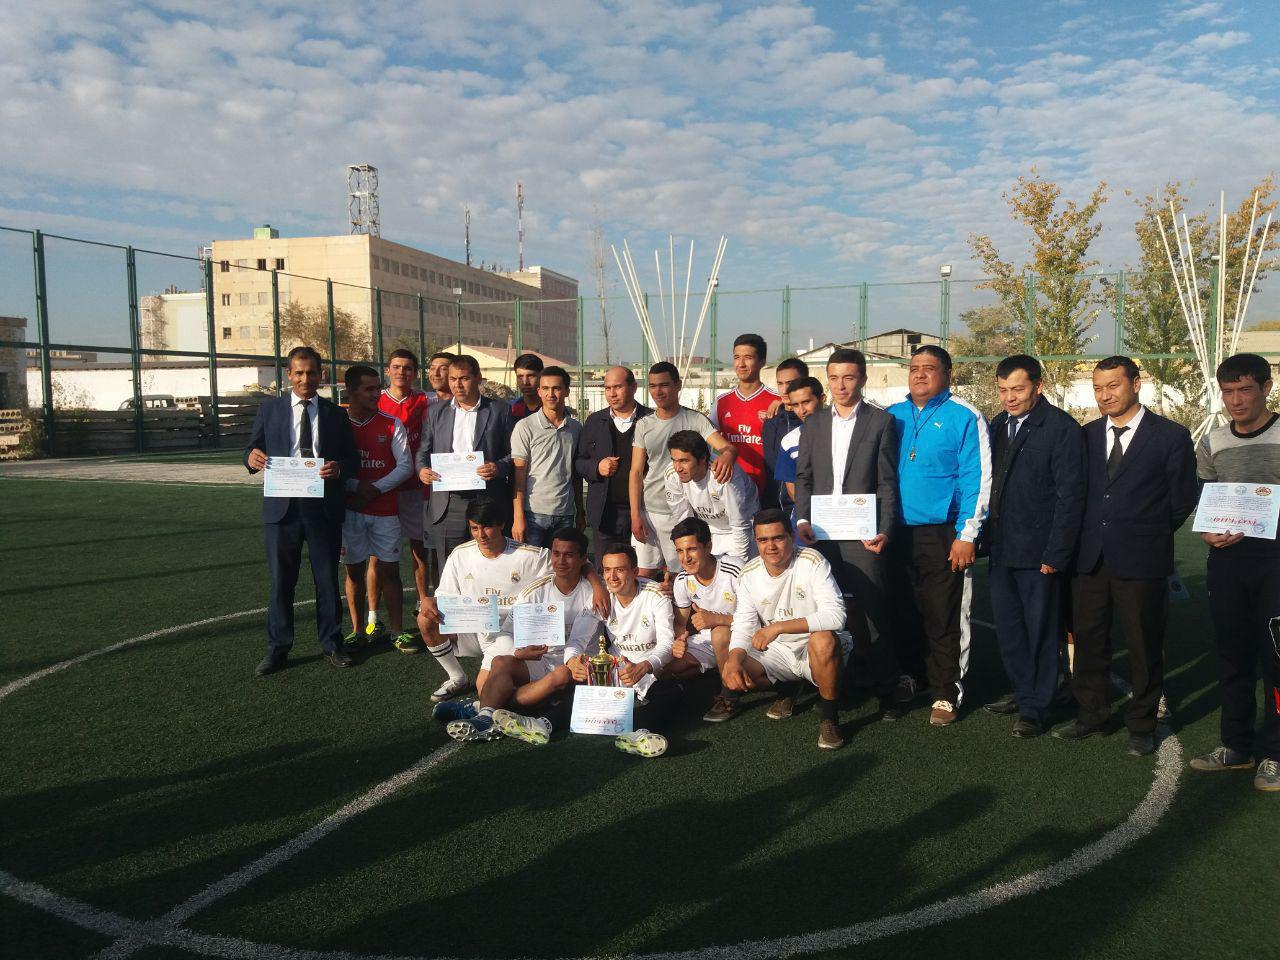 Соревнования по мини-футболу на факультете естественных наук по второму направлению 5-ой Инициативы, инициированной Президентом Республики Узбекистан